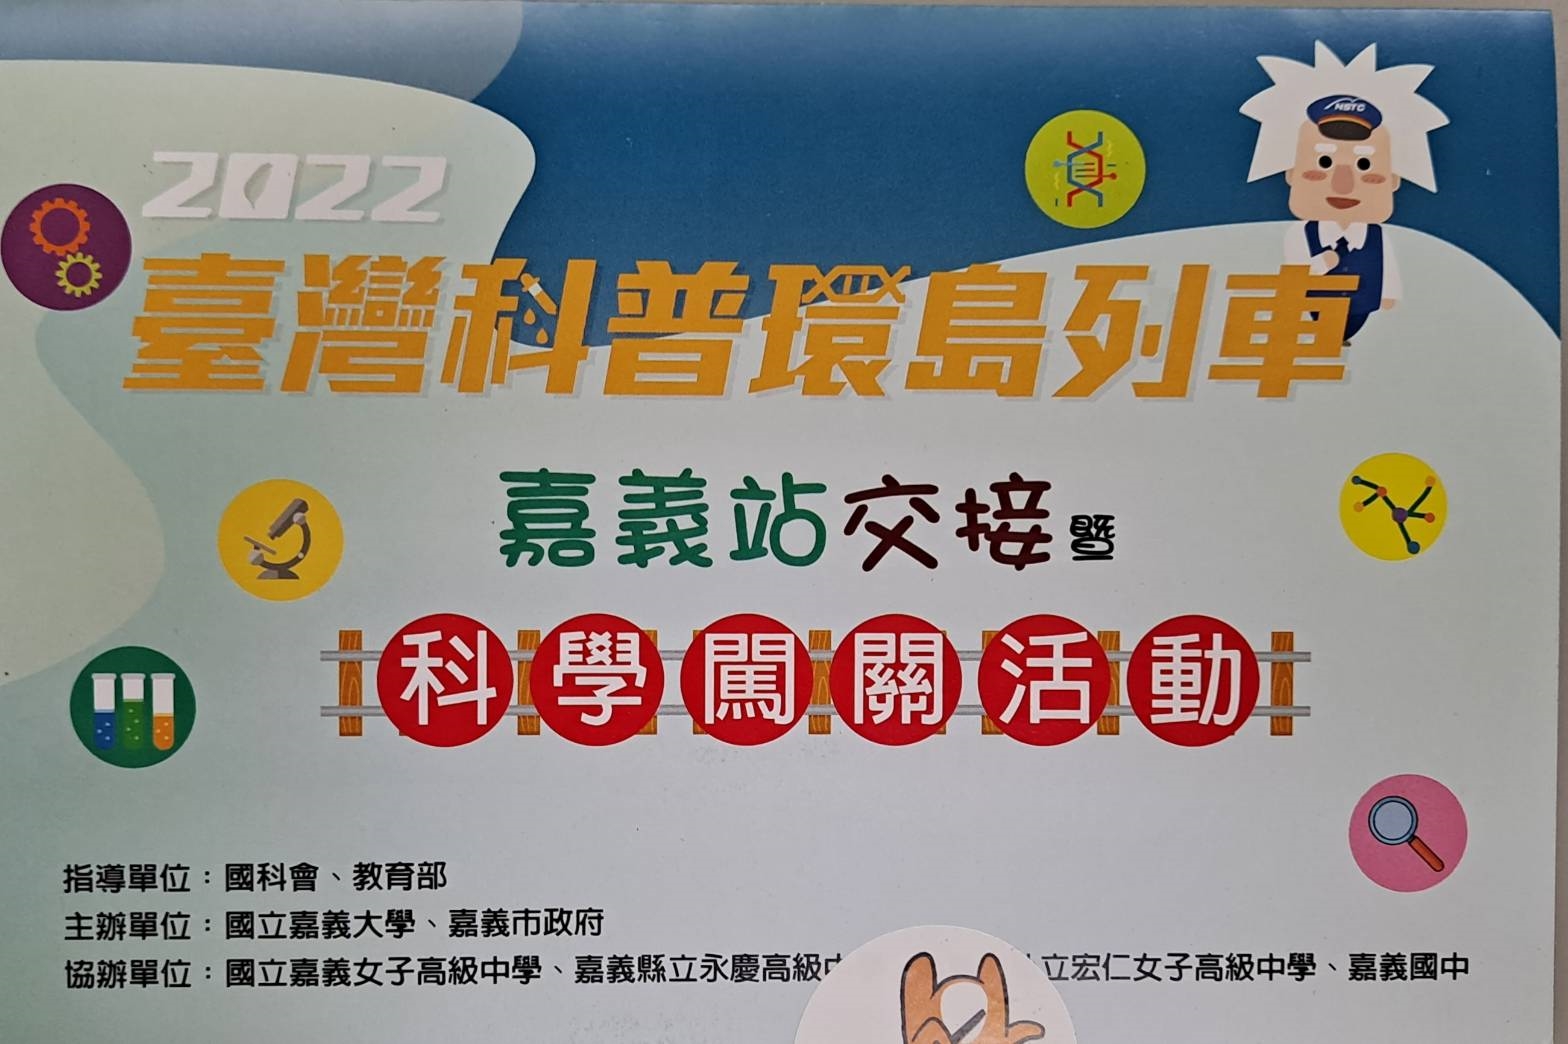 111年台灣環島科普列車嘉義站活動宣傳用圖片/海報